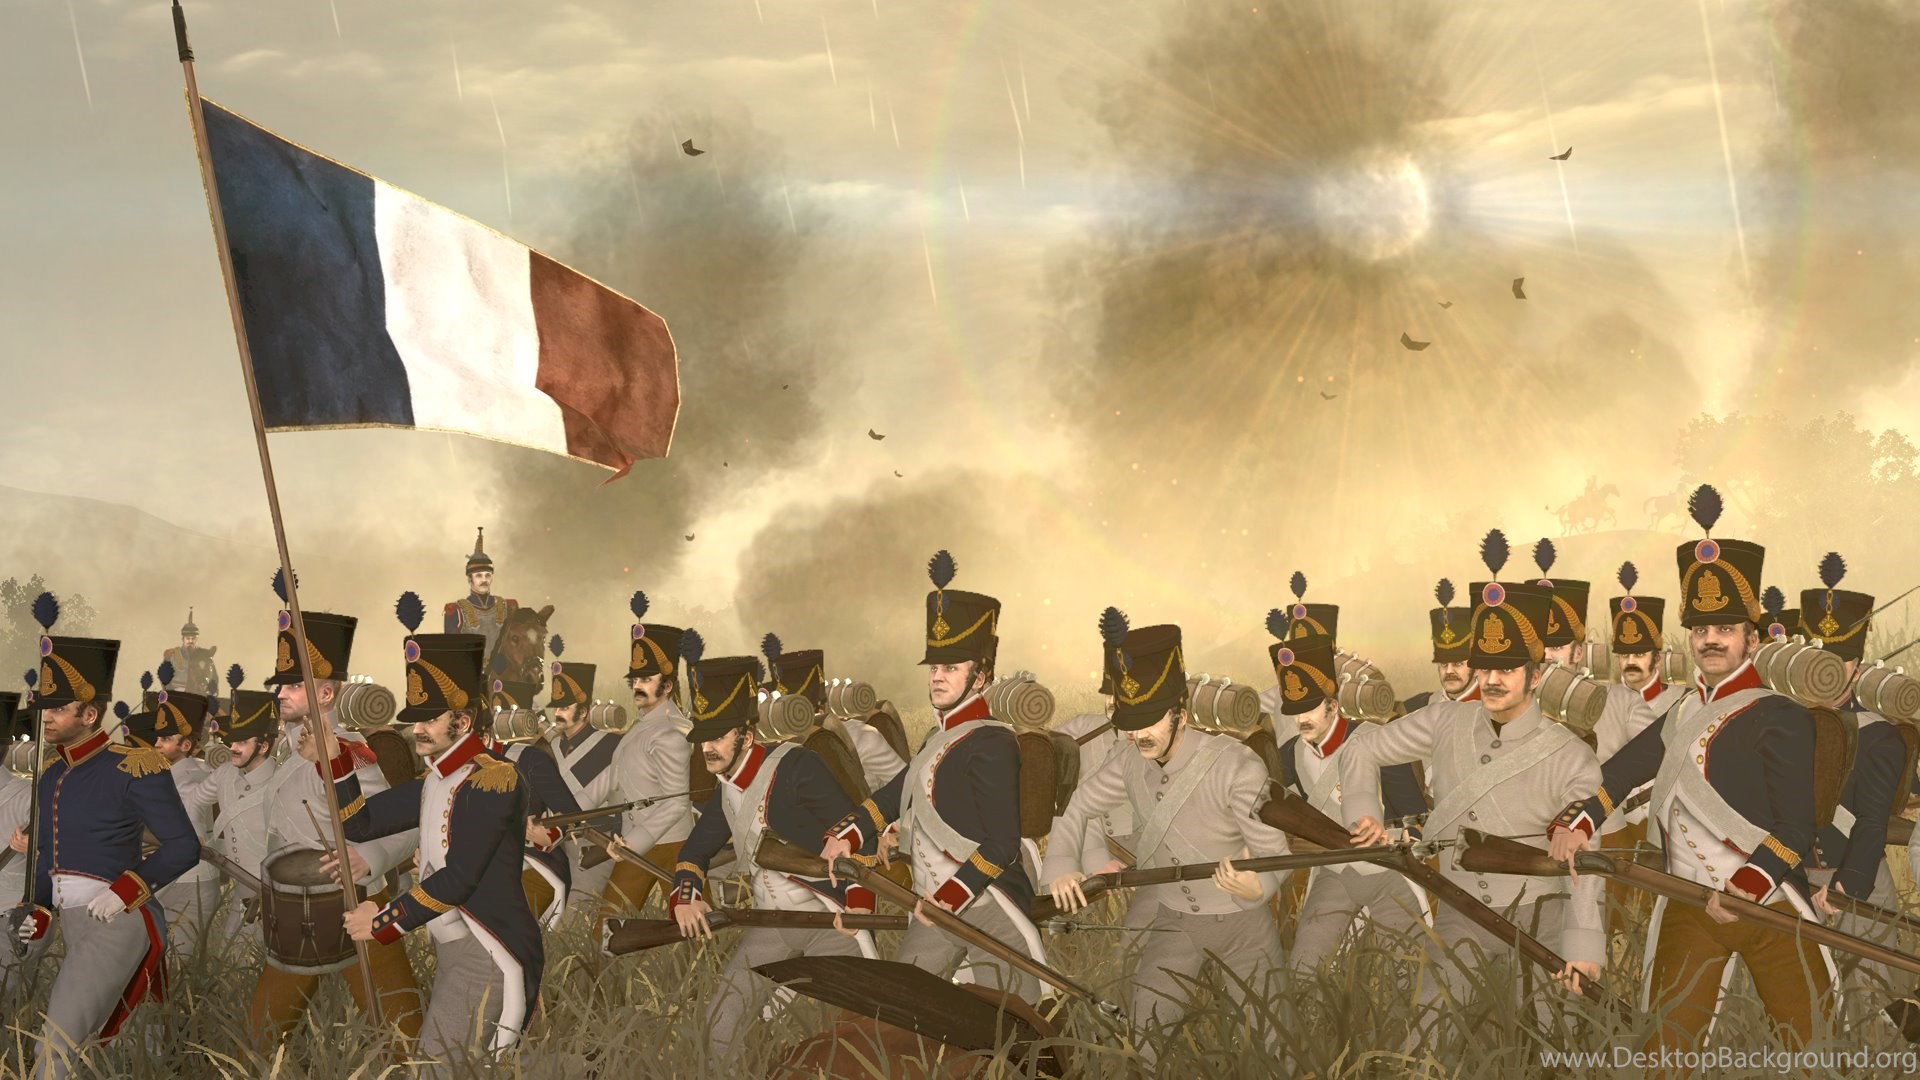 Napoleon Total War Shots, Vietnam, Story, 1920x1080 HD Wallpaper. Desktop Background